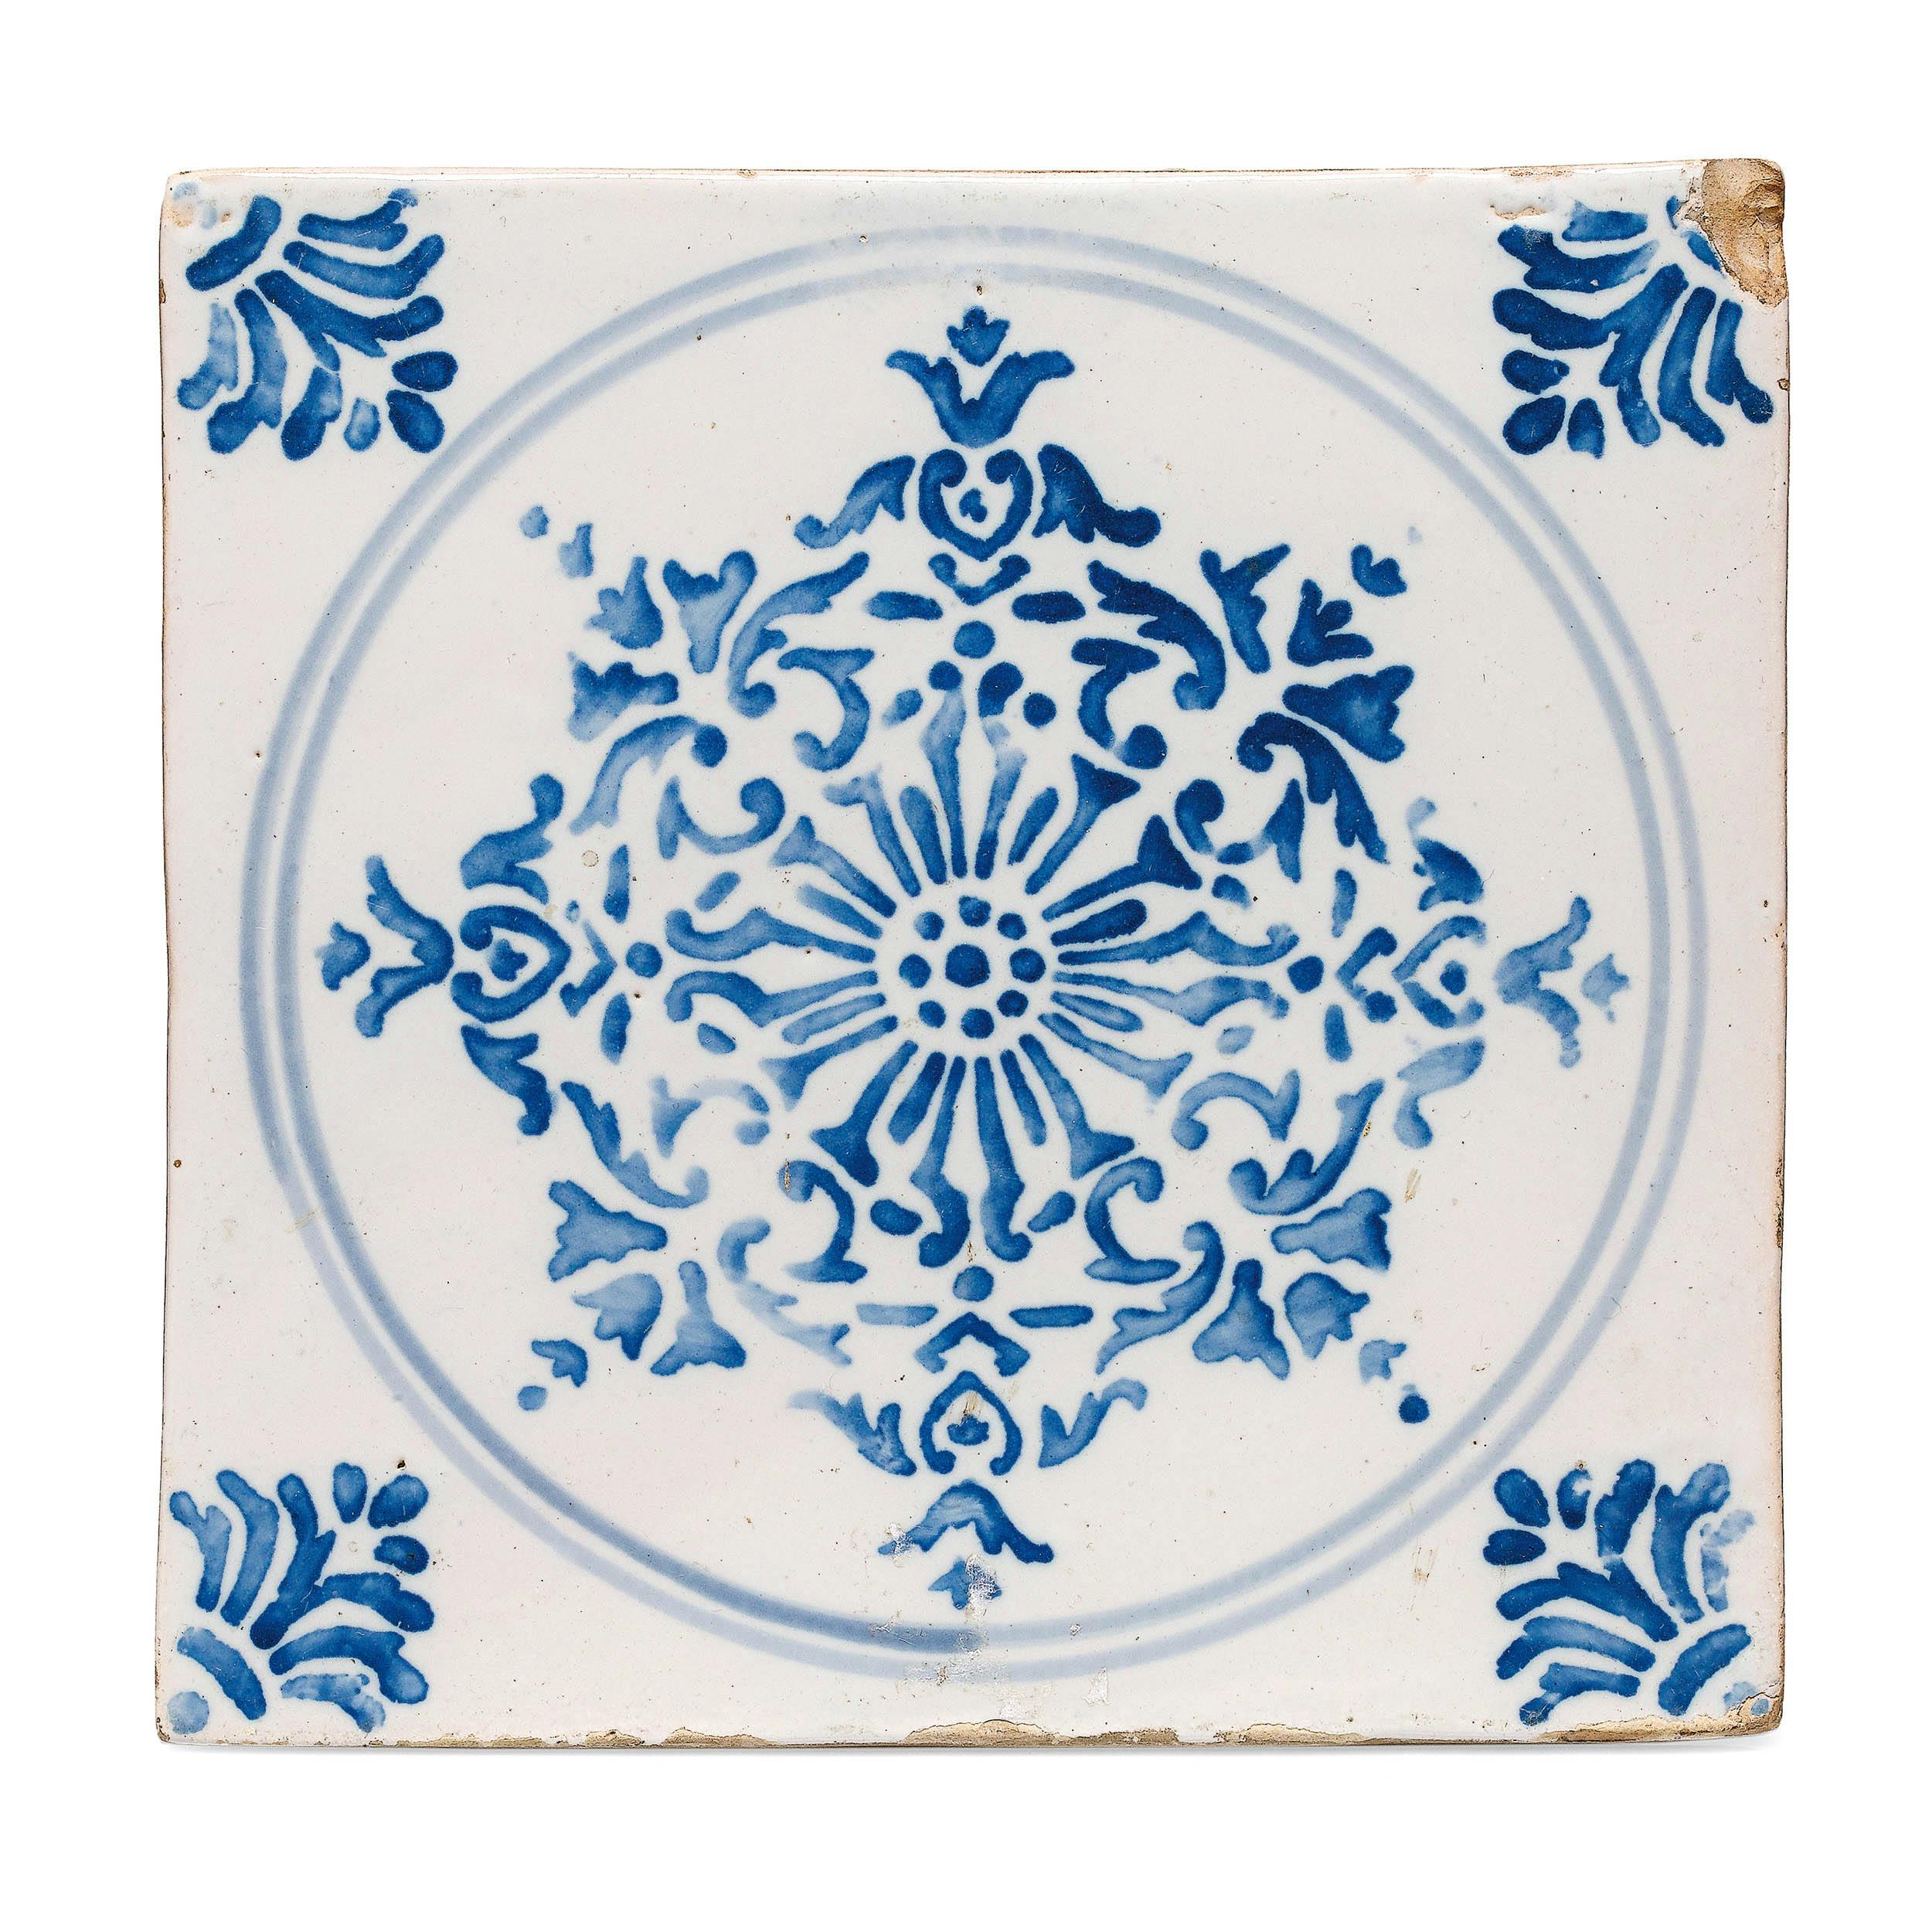 Mattonella quadrata bianca con decoro azzurro con motivi vegetali dentro un cerchio